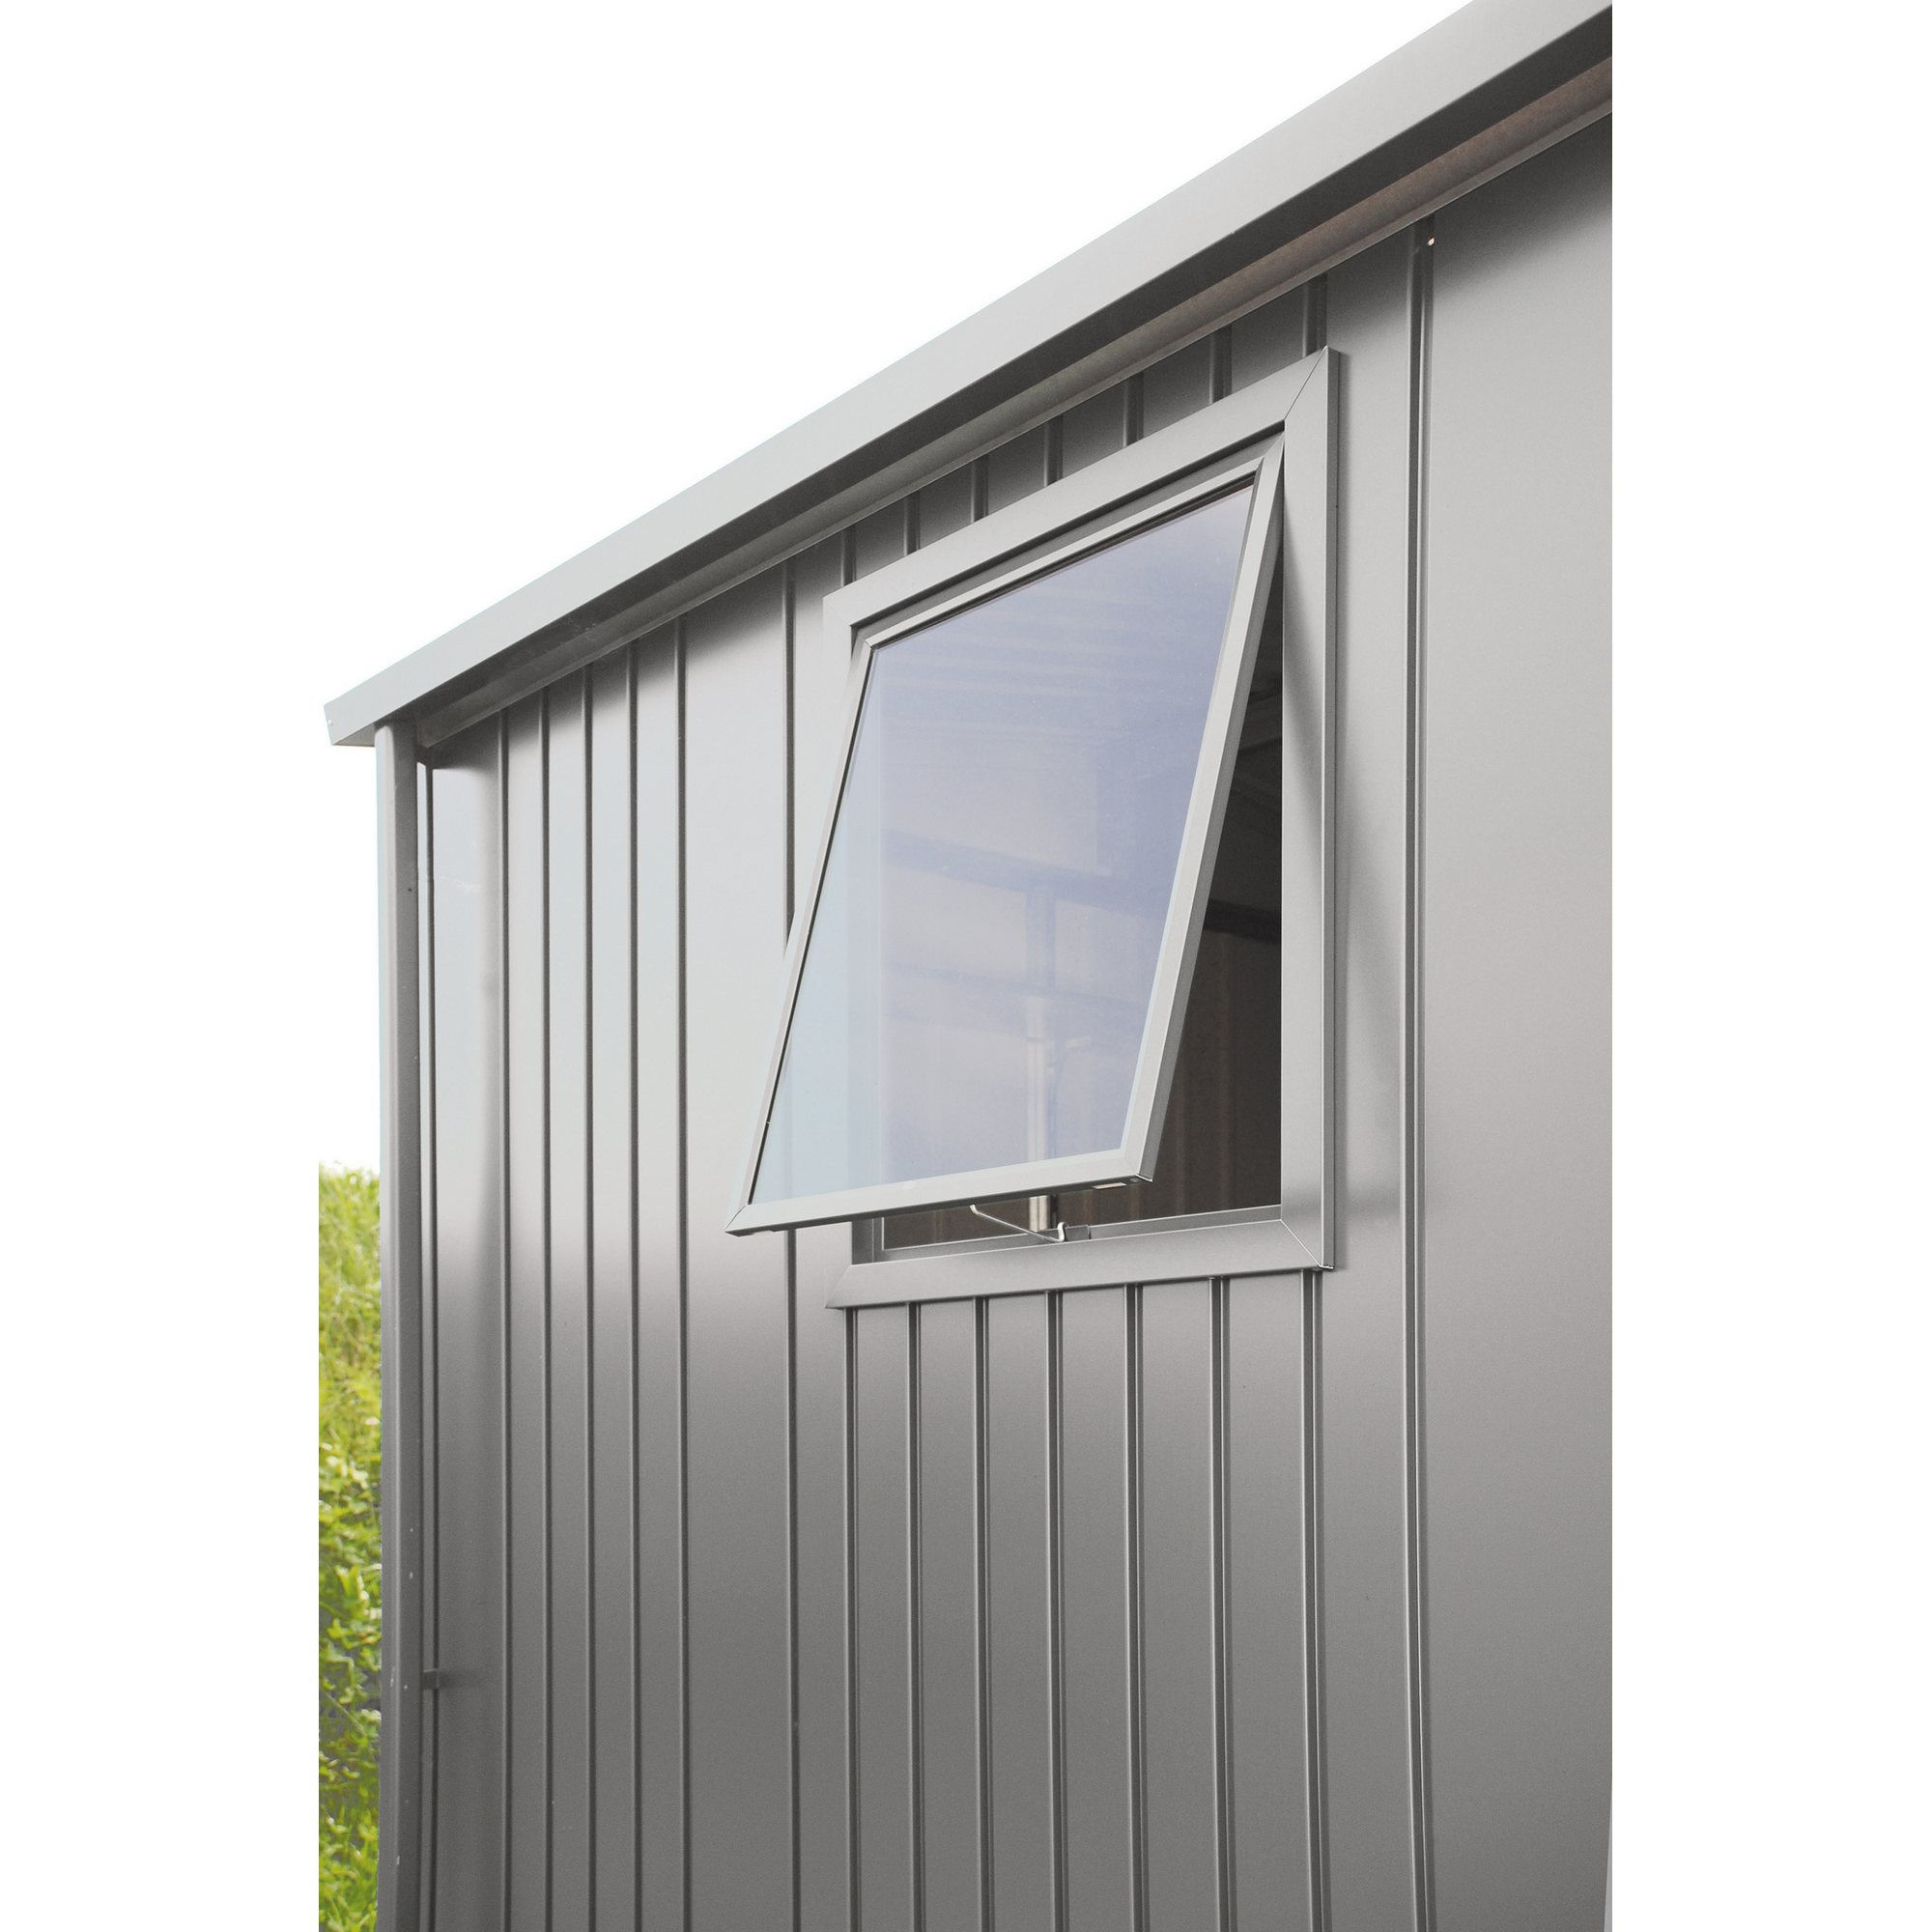 Fenster silber-metallic 50 x 60 cm für 'HighLine', 'Panorama' und 'Avantgarde' + product picture